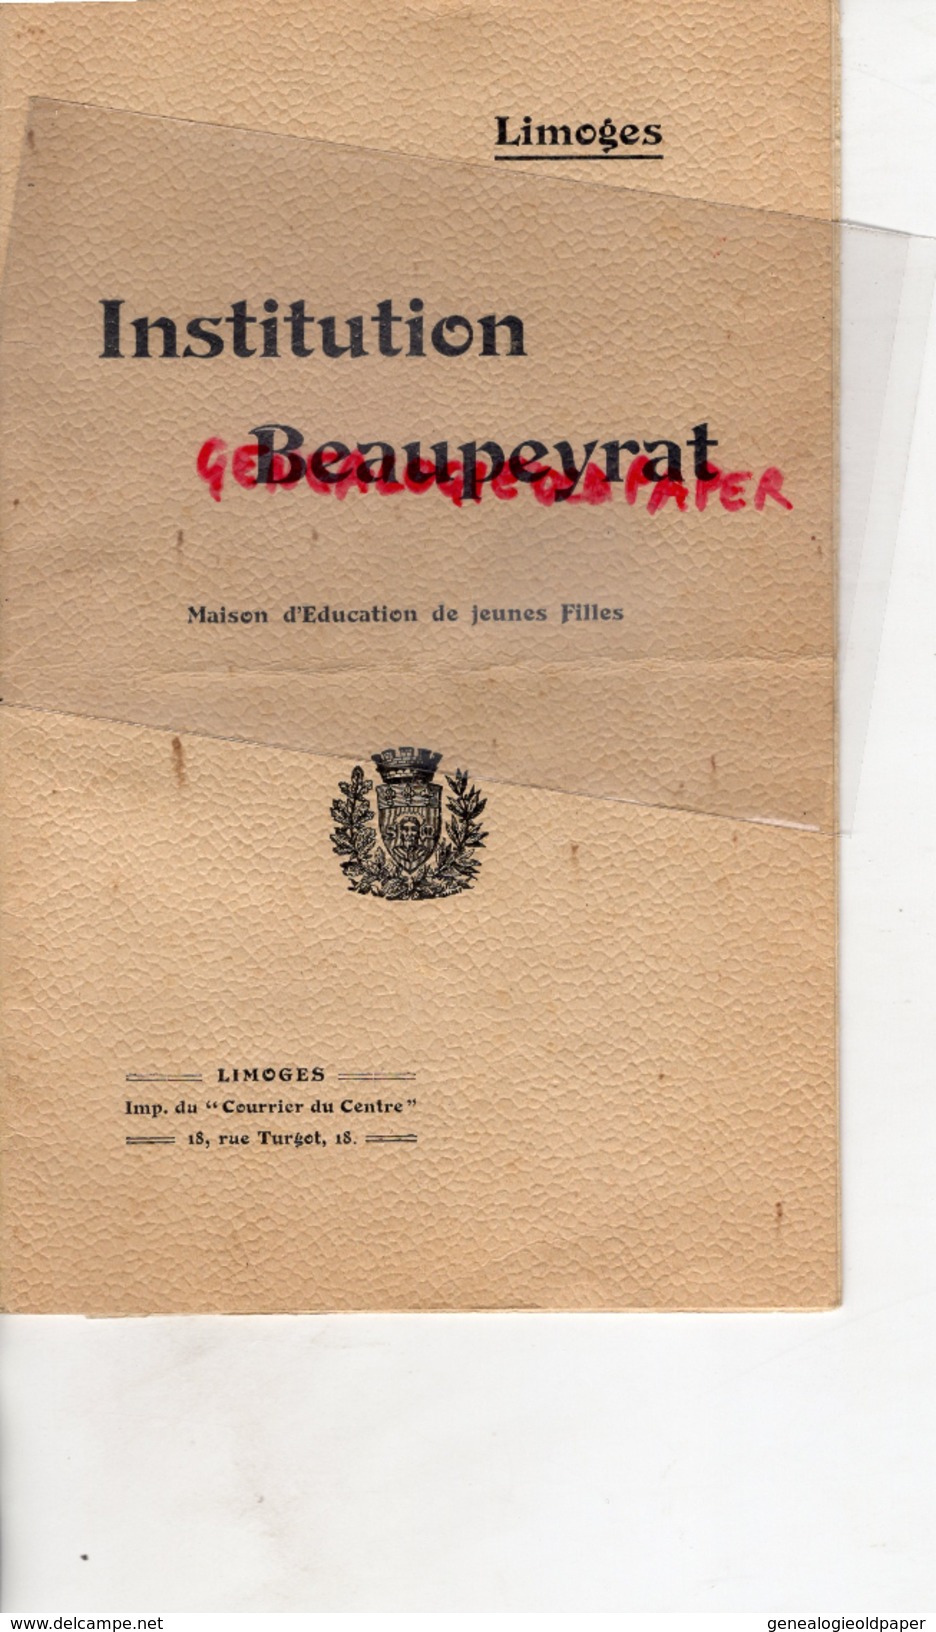 87 - LIMOGES- LIVRET INSTITUTION BEAUPEYRAT-MAISON EDUCATION JEUNES FILLES- ECOLE- LAURE VERGER DIRECTRICE-1915 - Documents Historiques